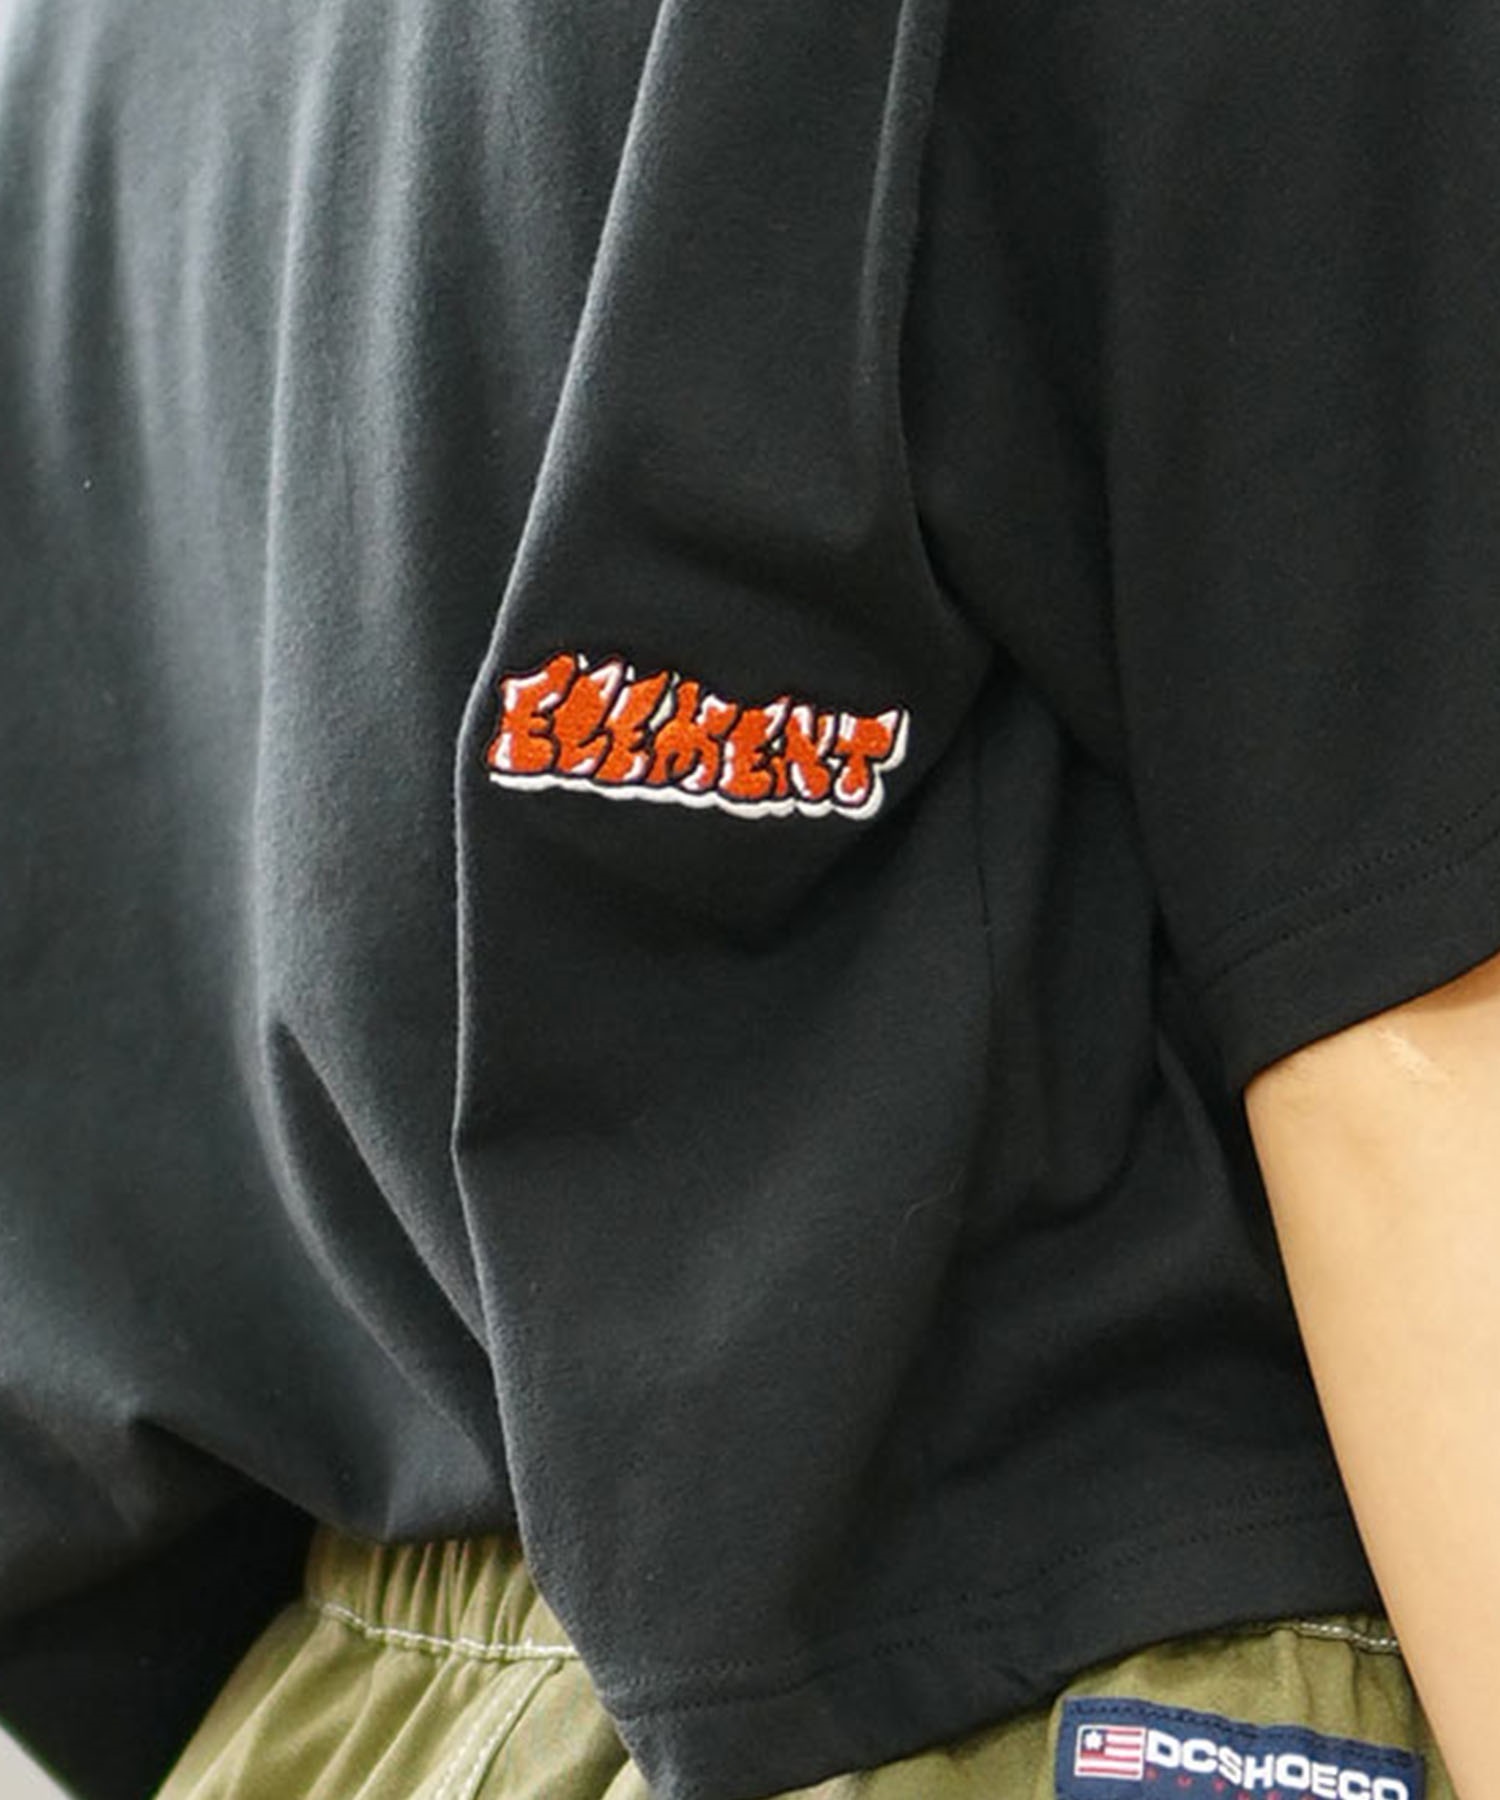 ELEMENT エレメント レディース 半袖 Tシャツ ロゴ ショート丈 クロップド丈 BE02C-261(ORG-M)